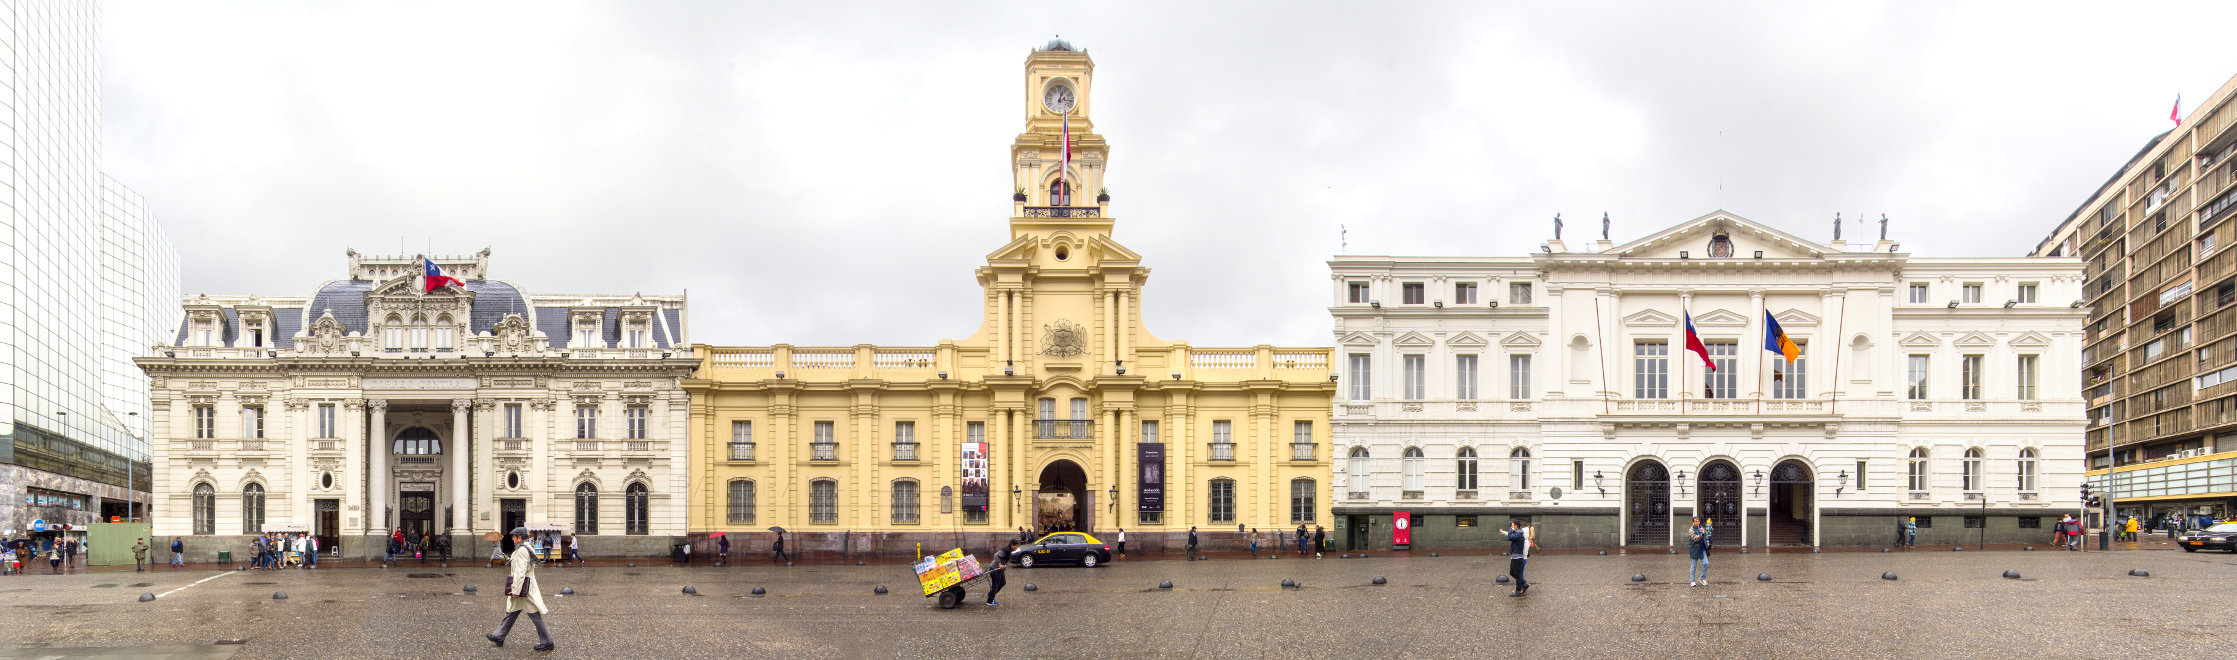 Architecture santiago plaza de armas museo historico nacional de chile